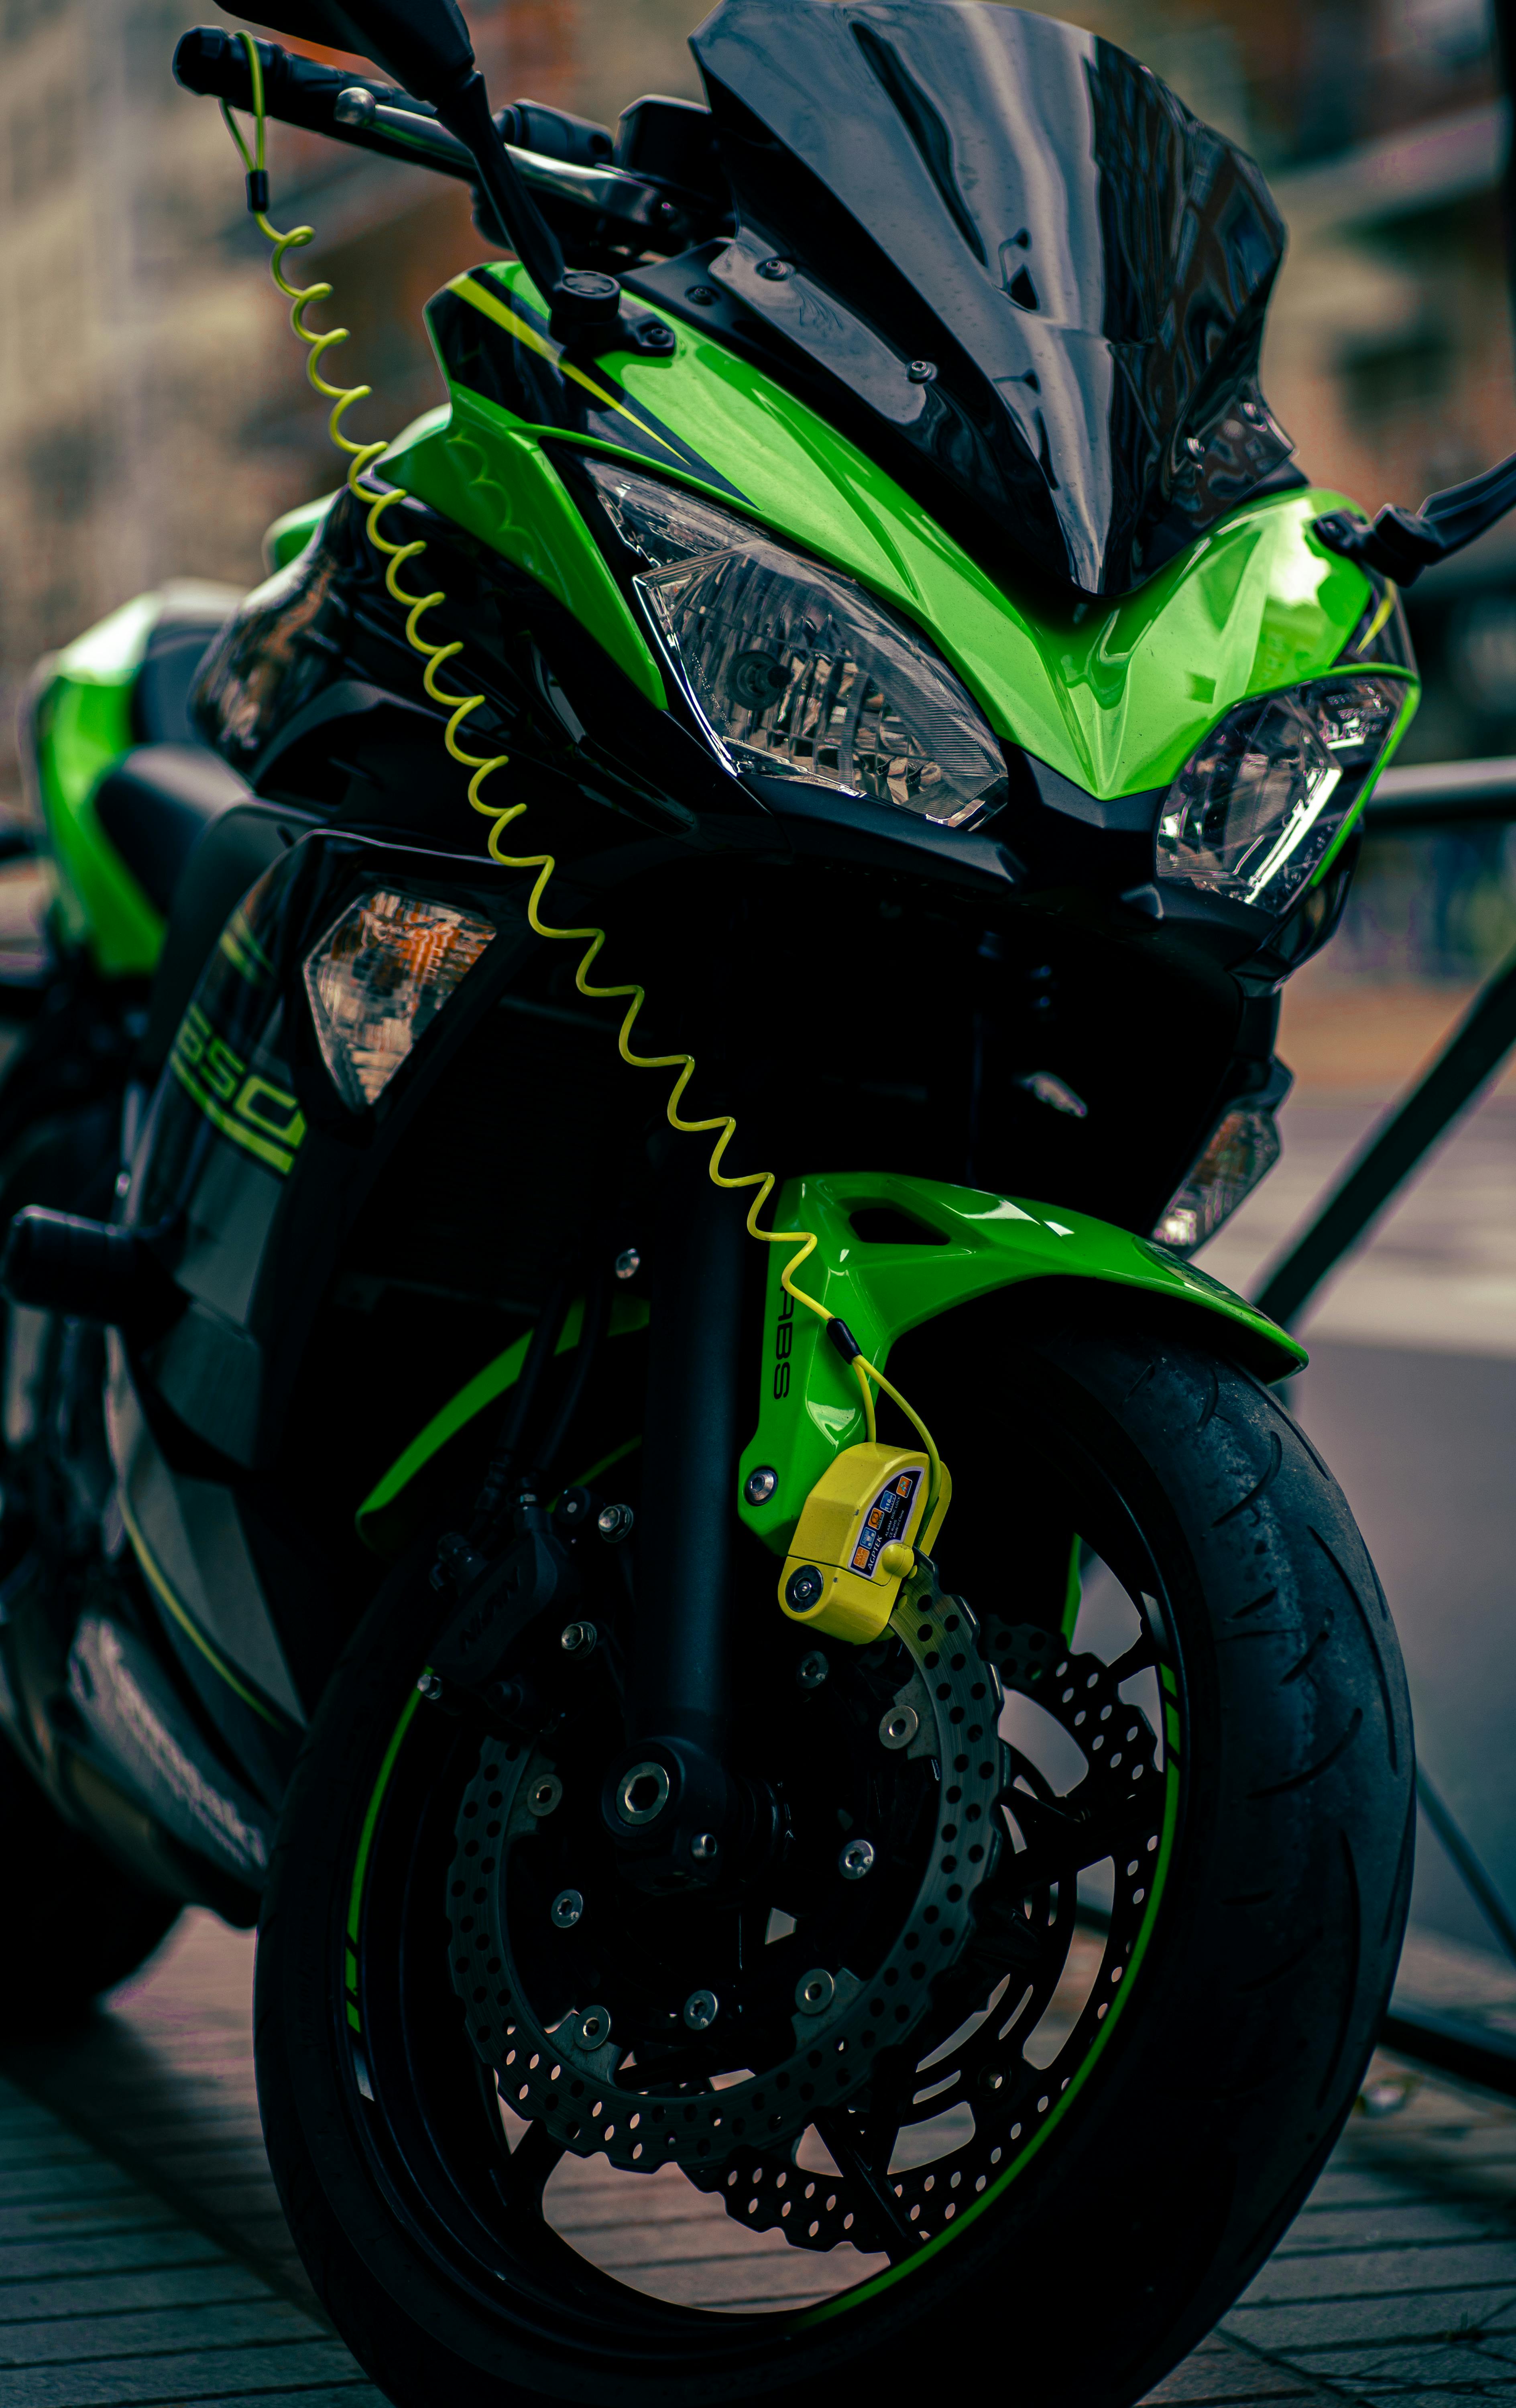 Kawasaki Ninja Photos, Download The BEST Free Kawasaki Ninja Stock Photos &  HD Images